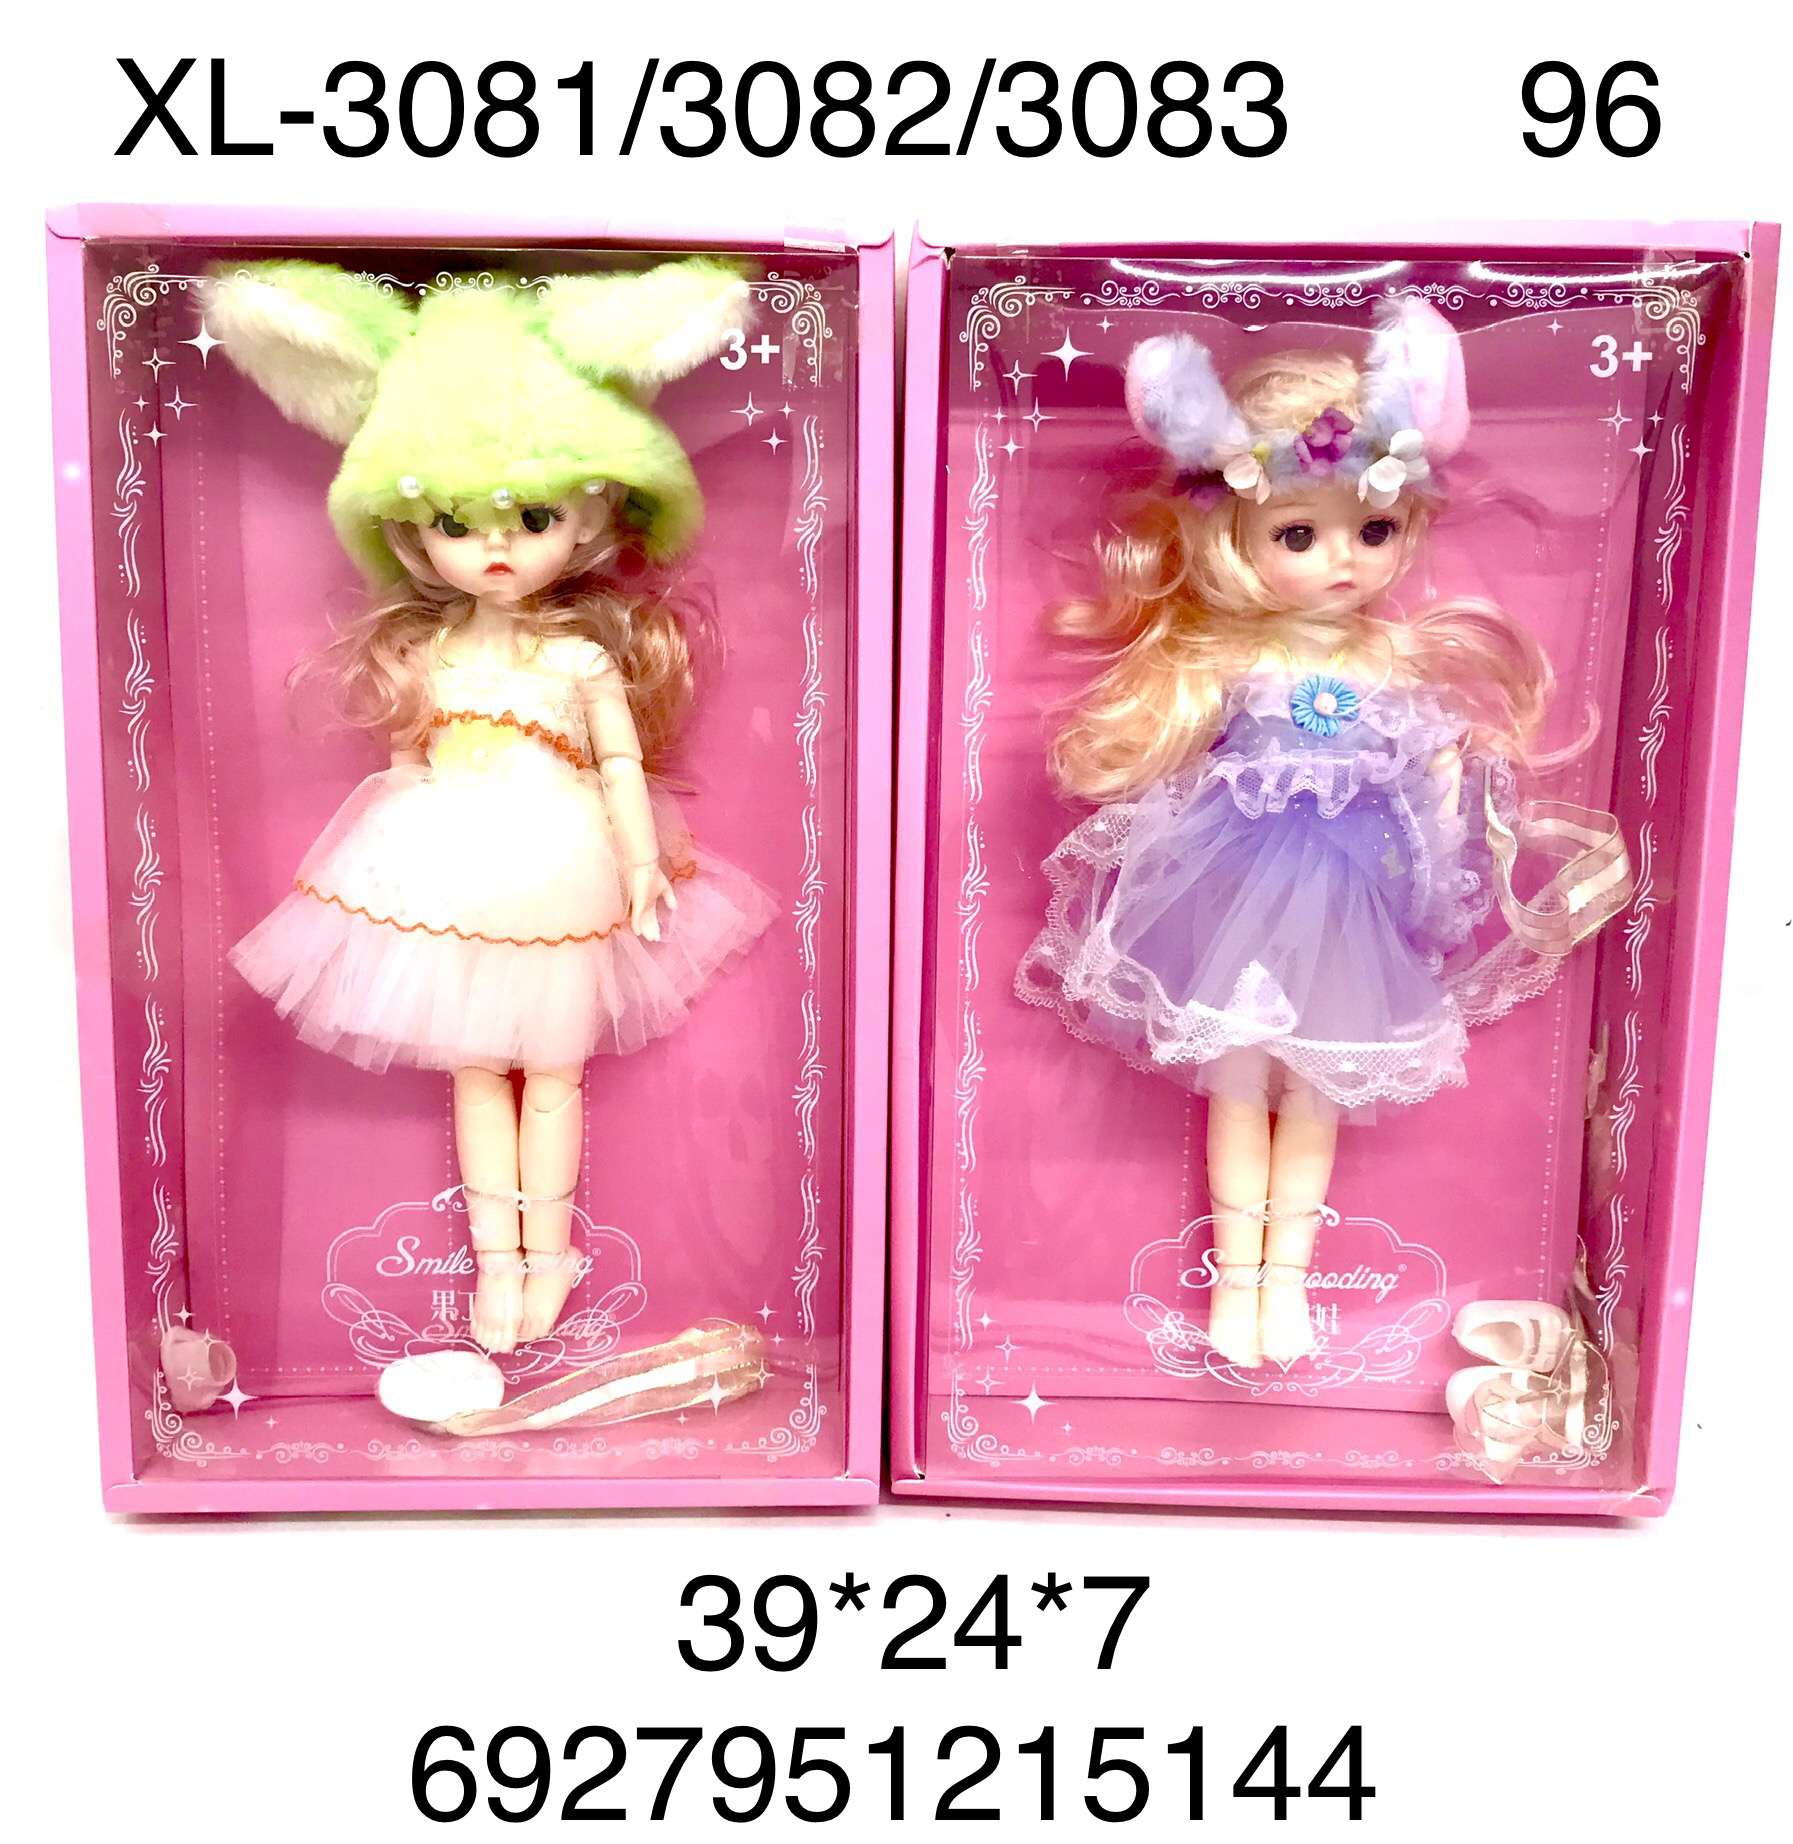 Кукла XL-3081/3082/3083 Smile в ассортименте - Бугульма 